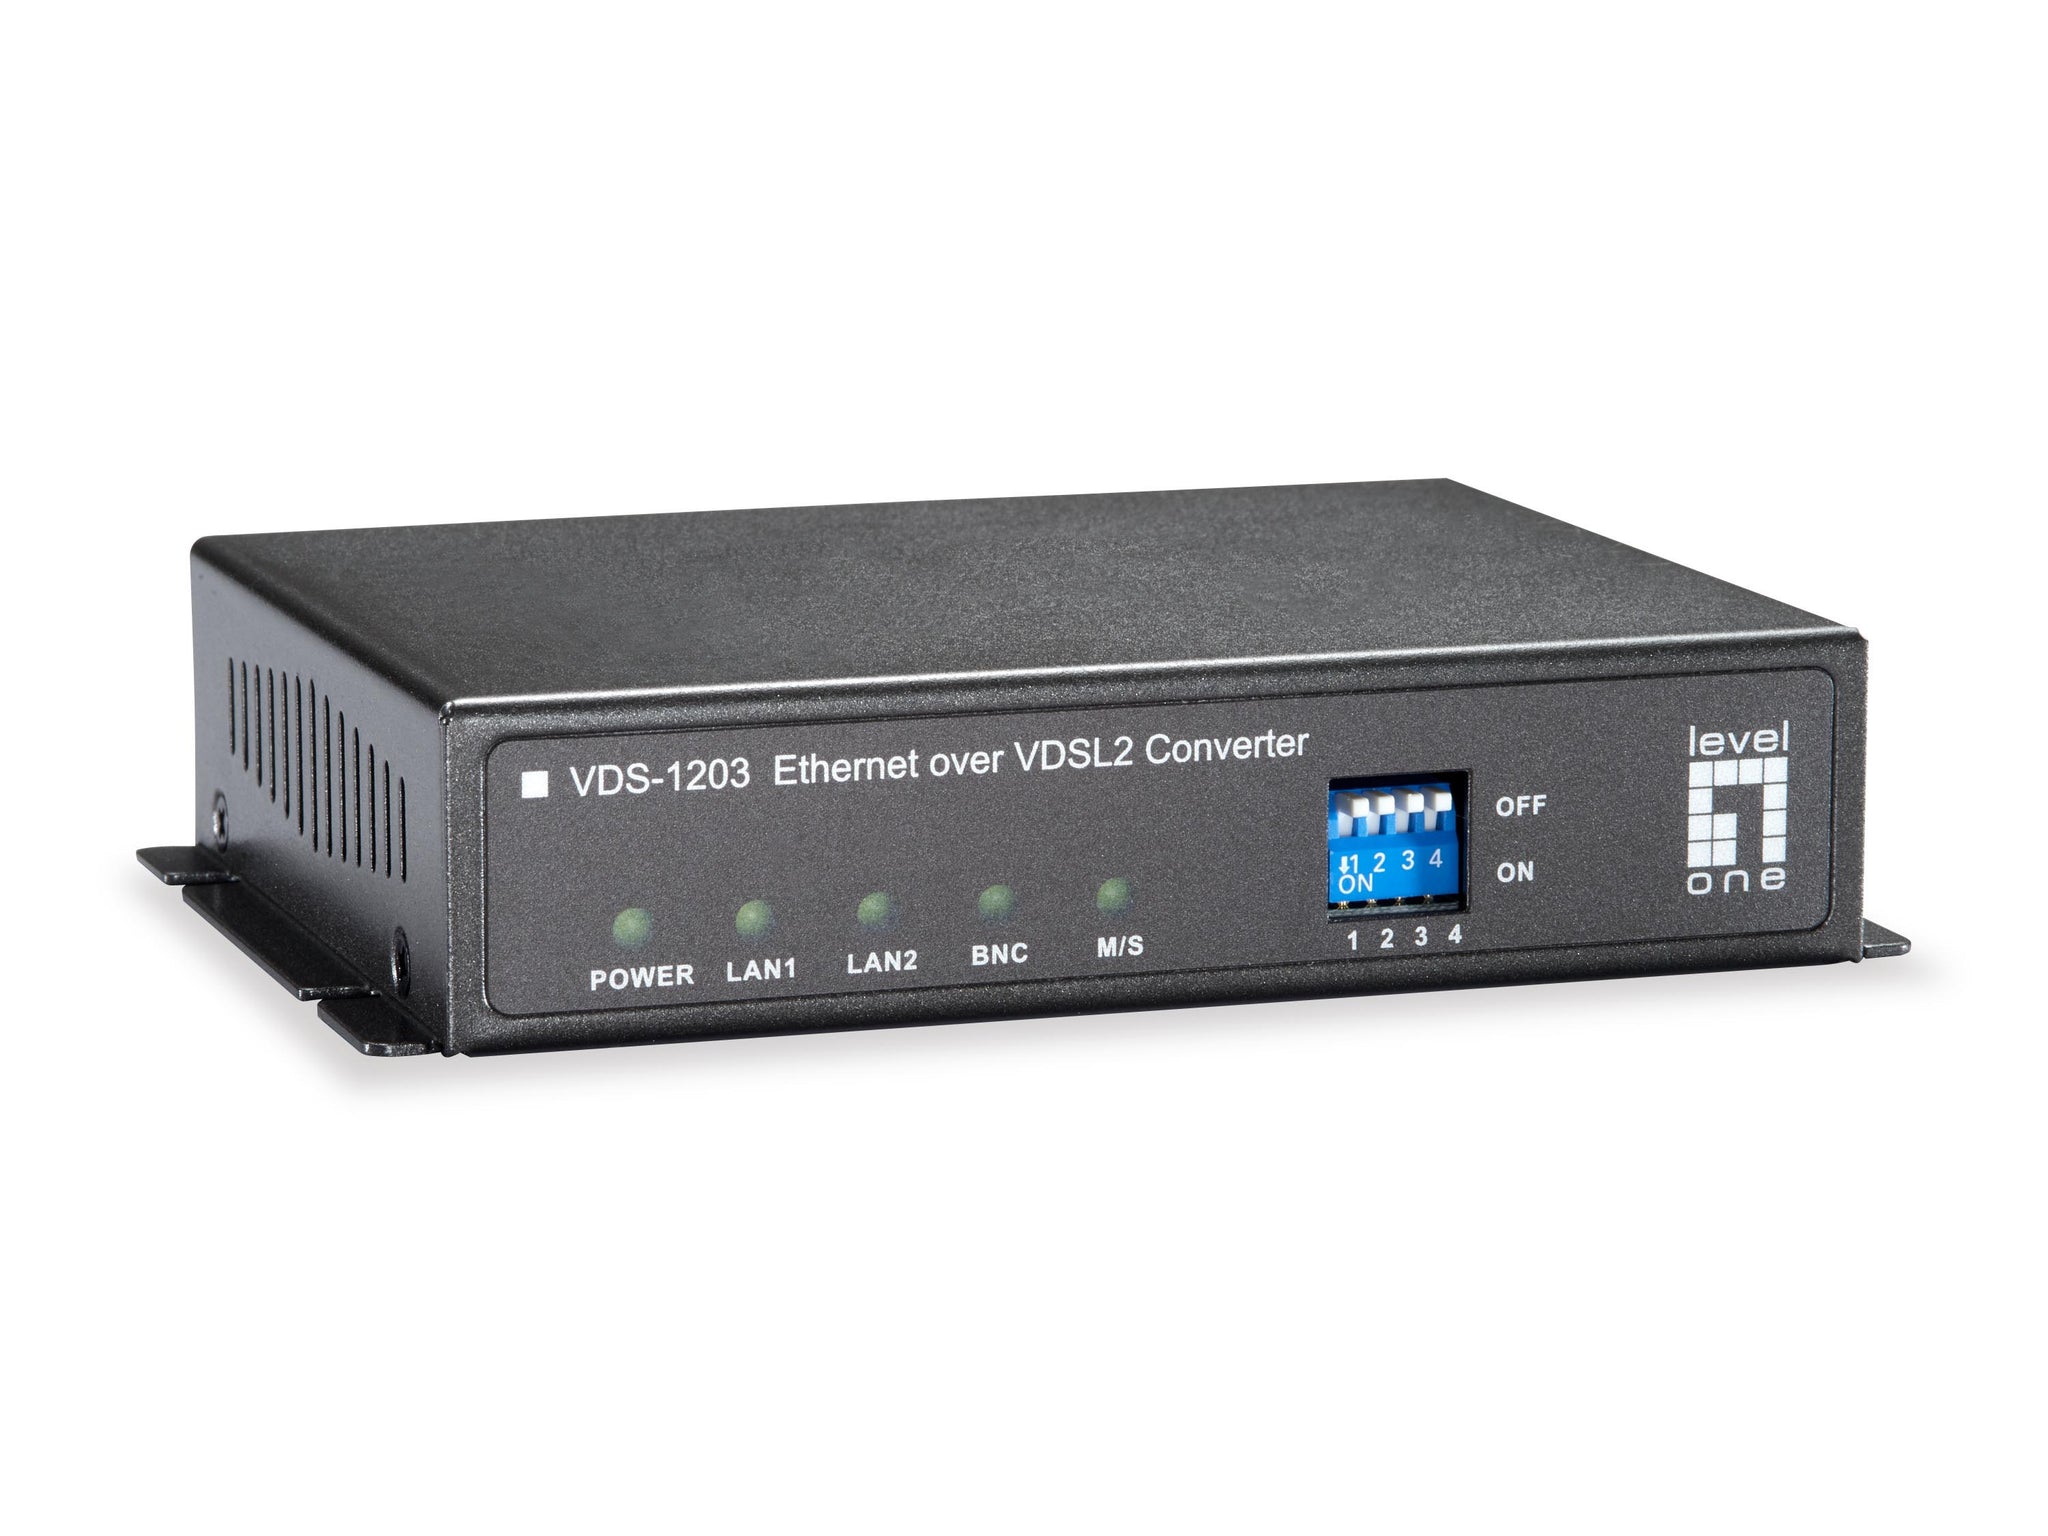 VDS-1203 Ethernet over VDSL2 Converter, BNC